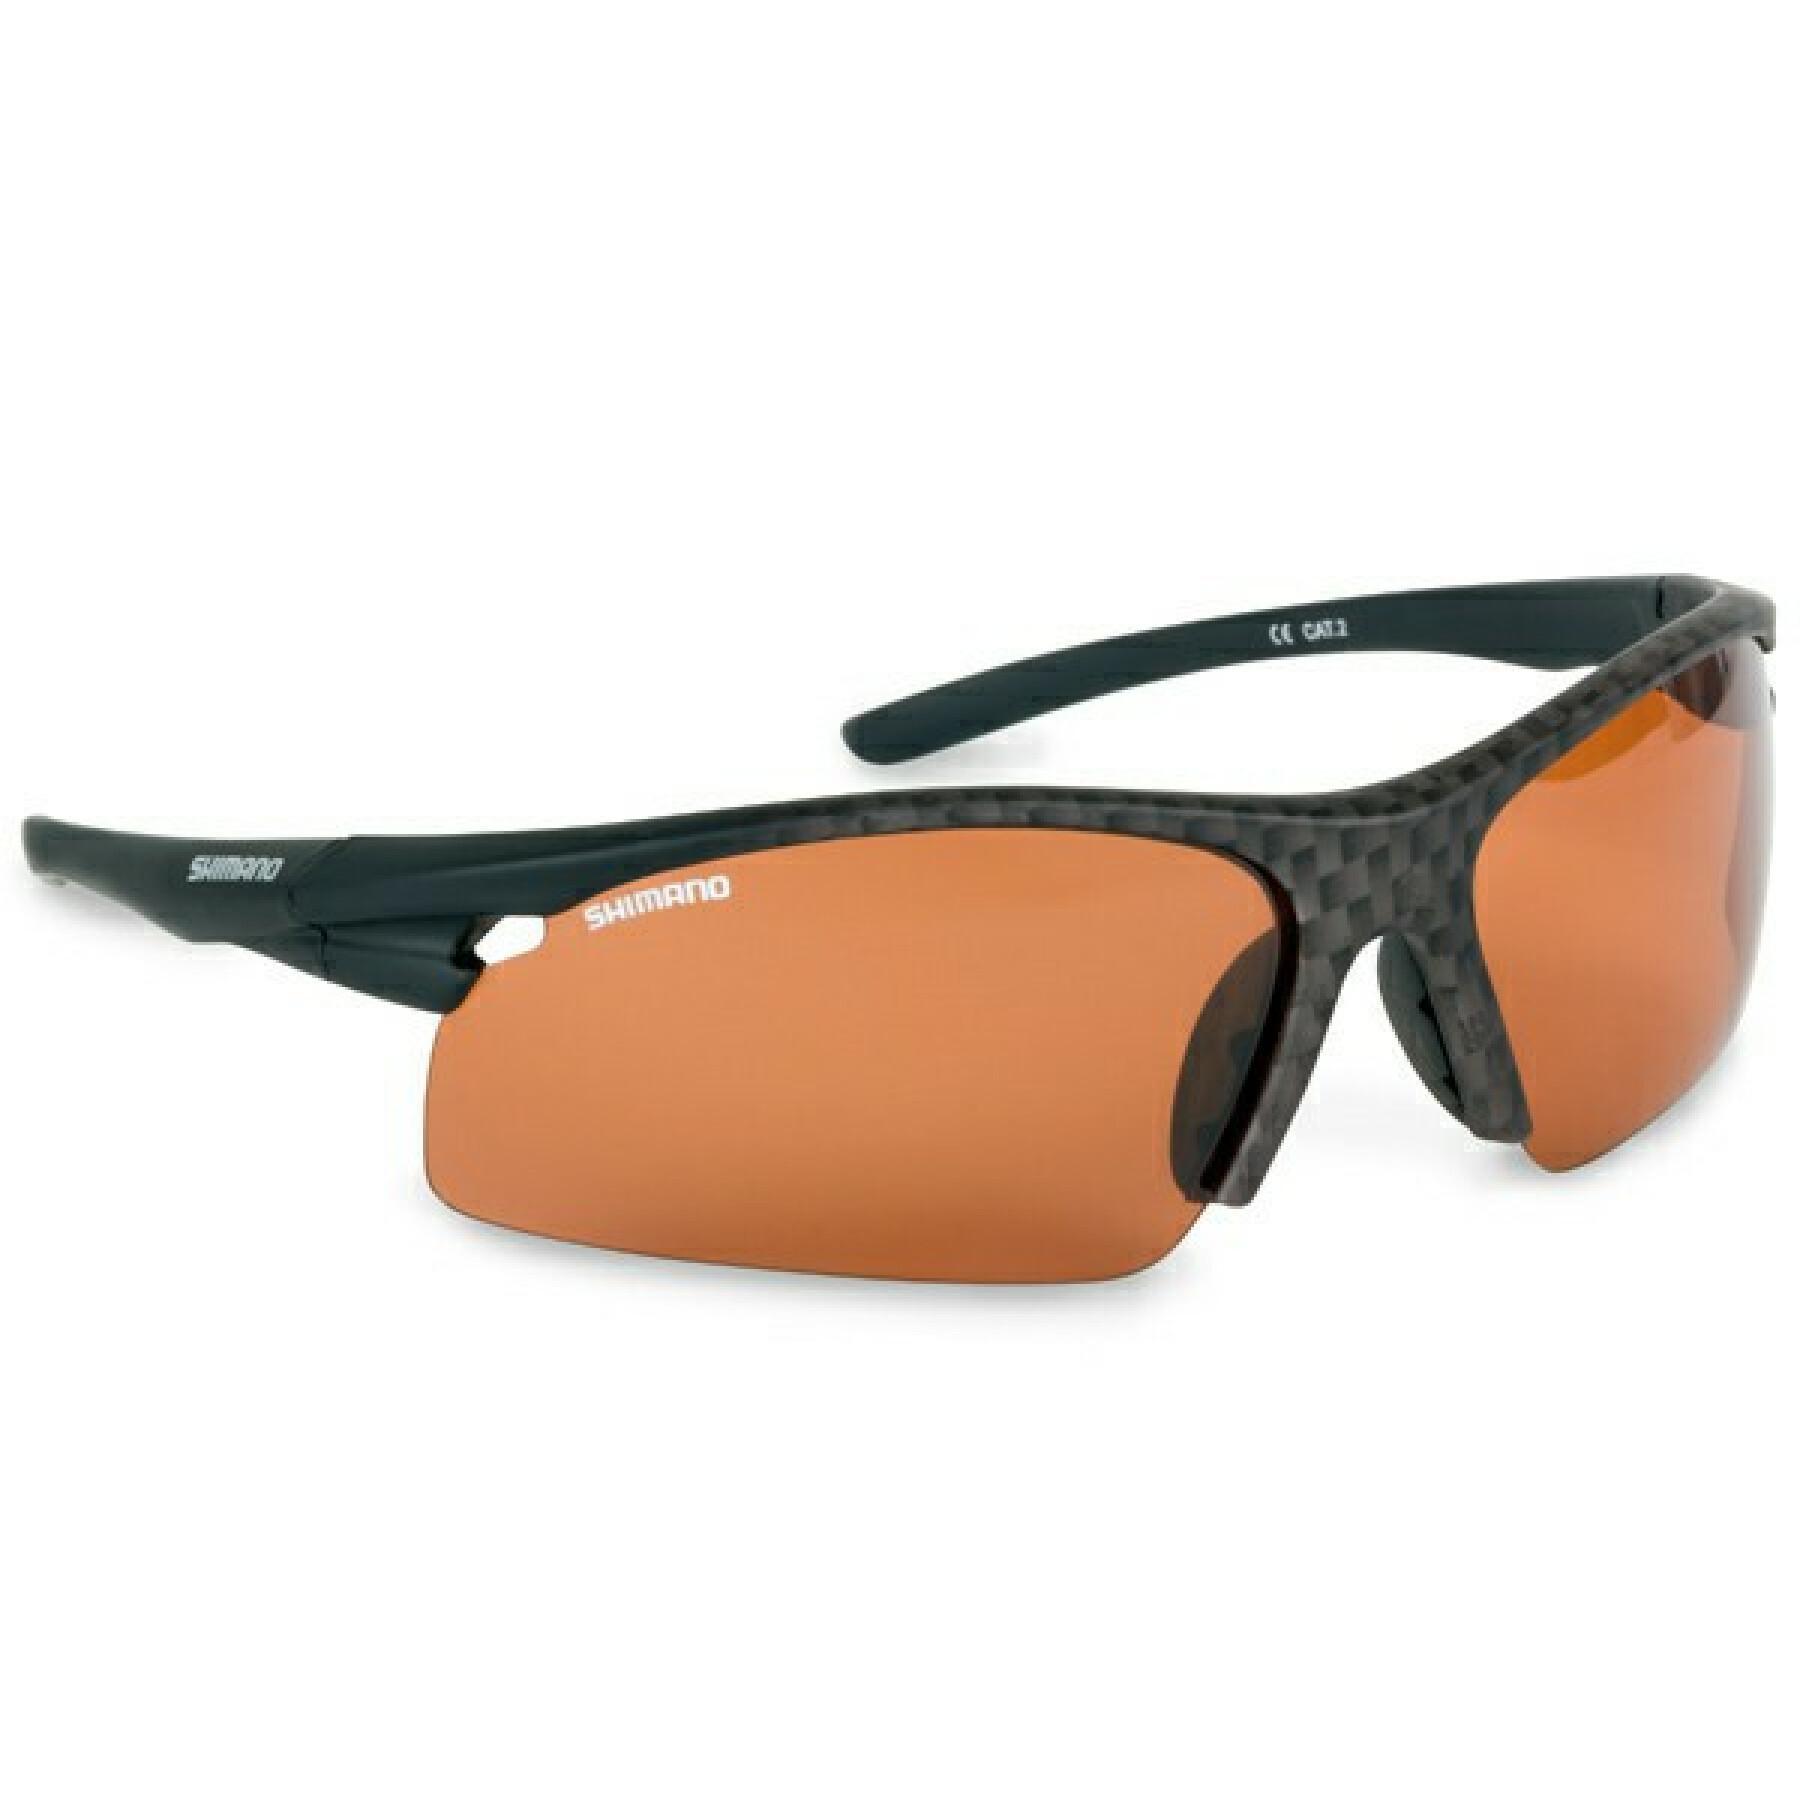 Óculos de sol Shimano Fireblood